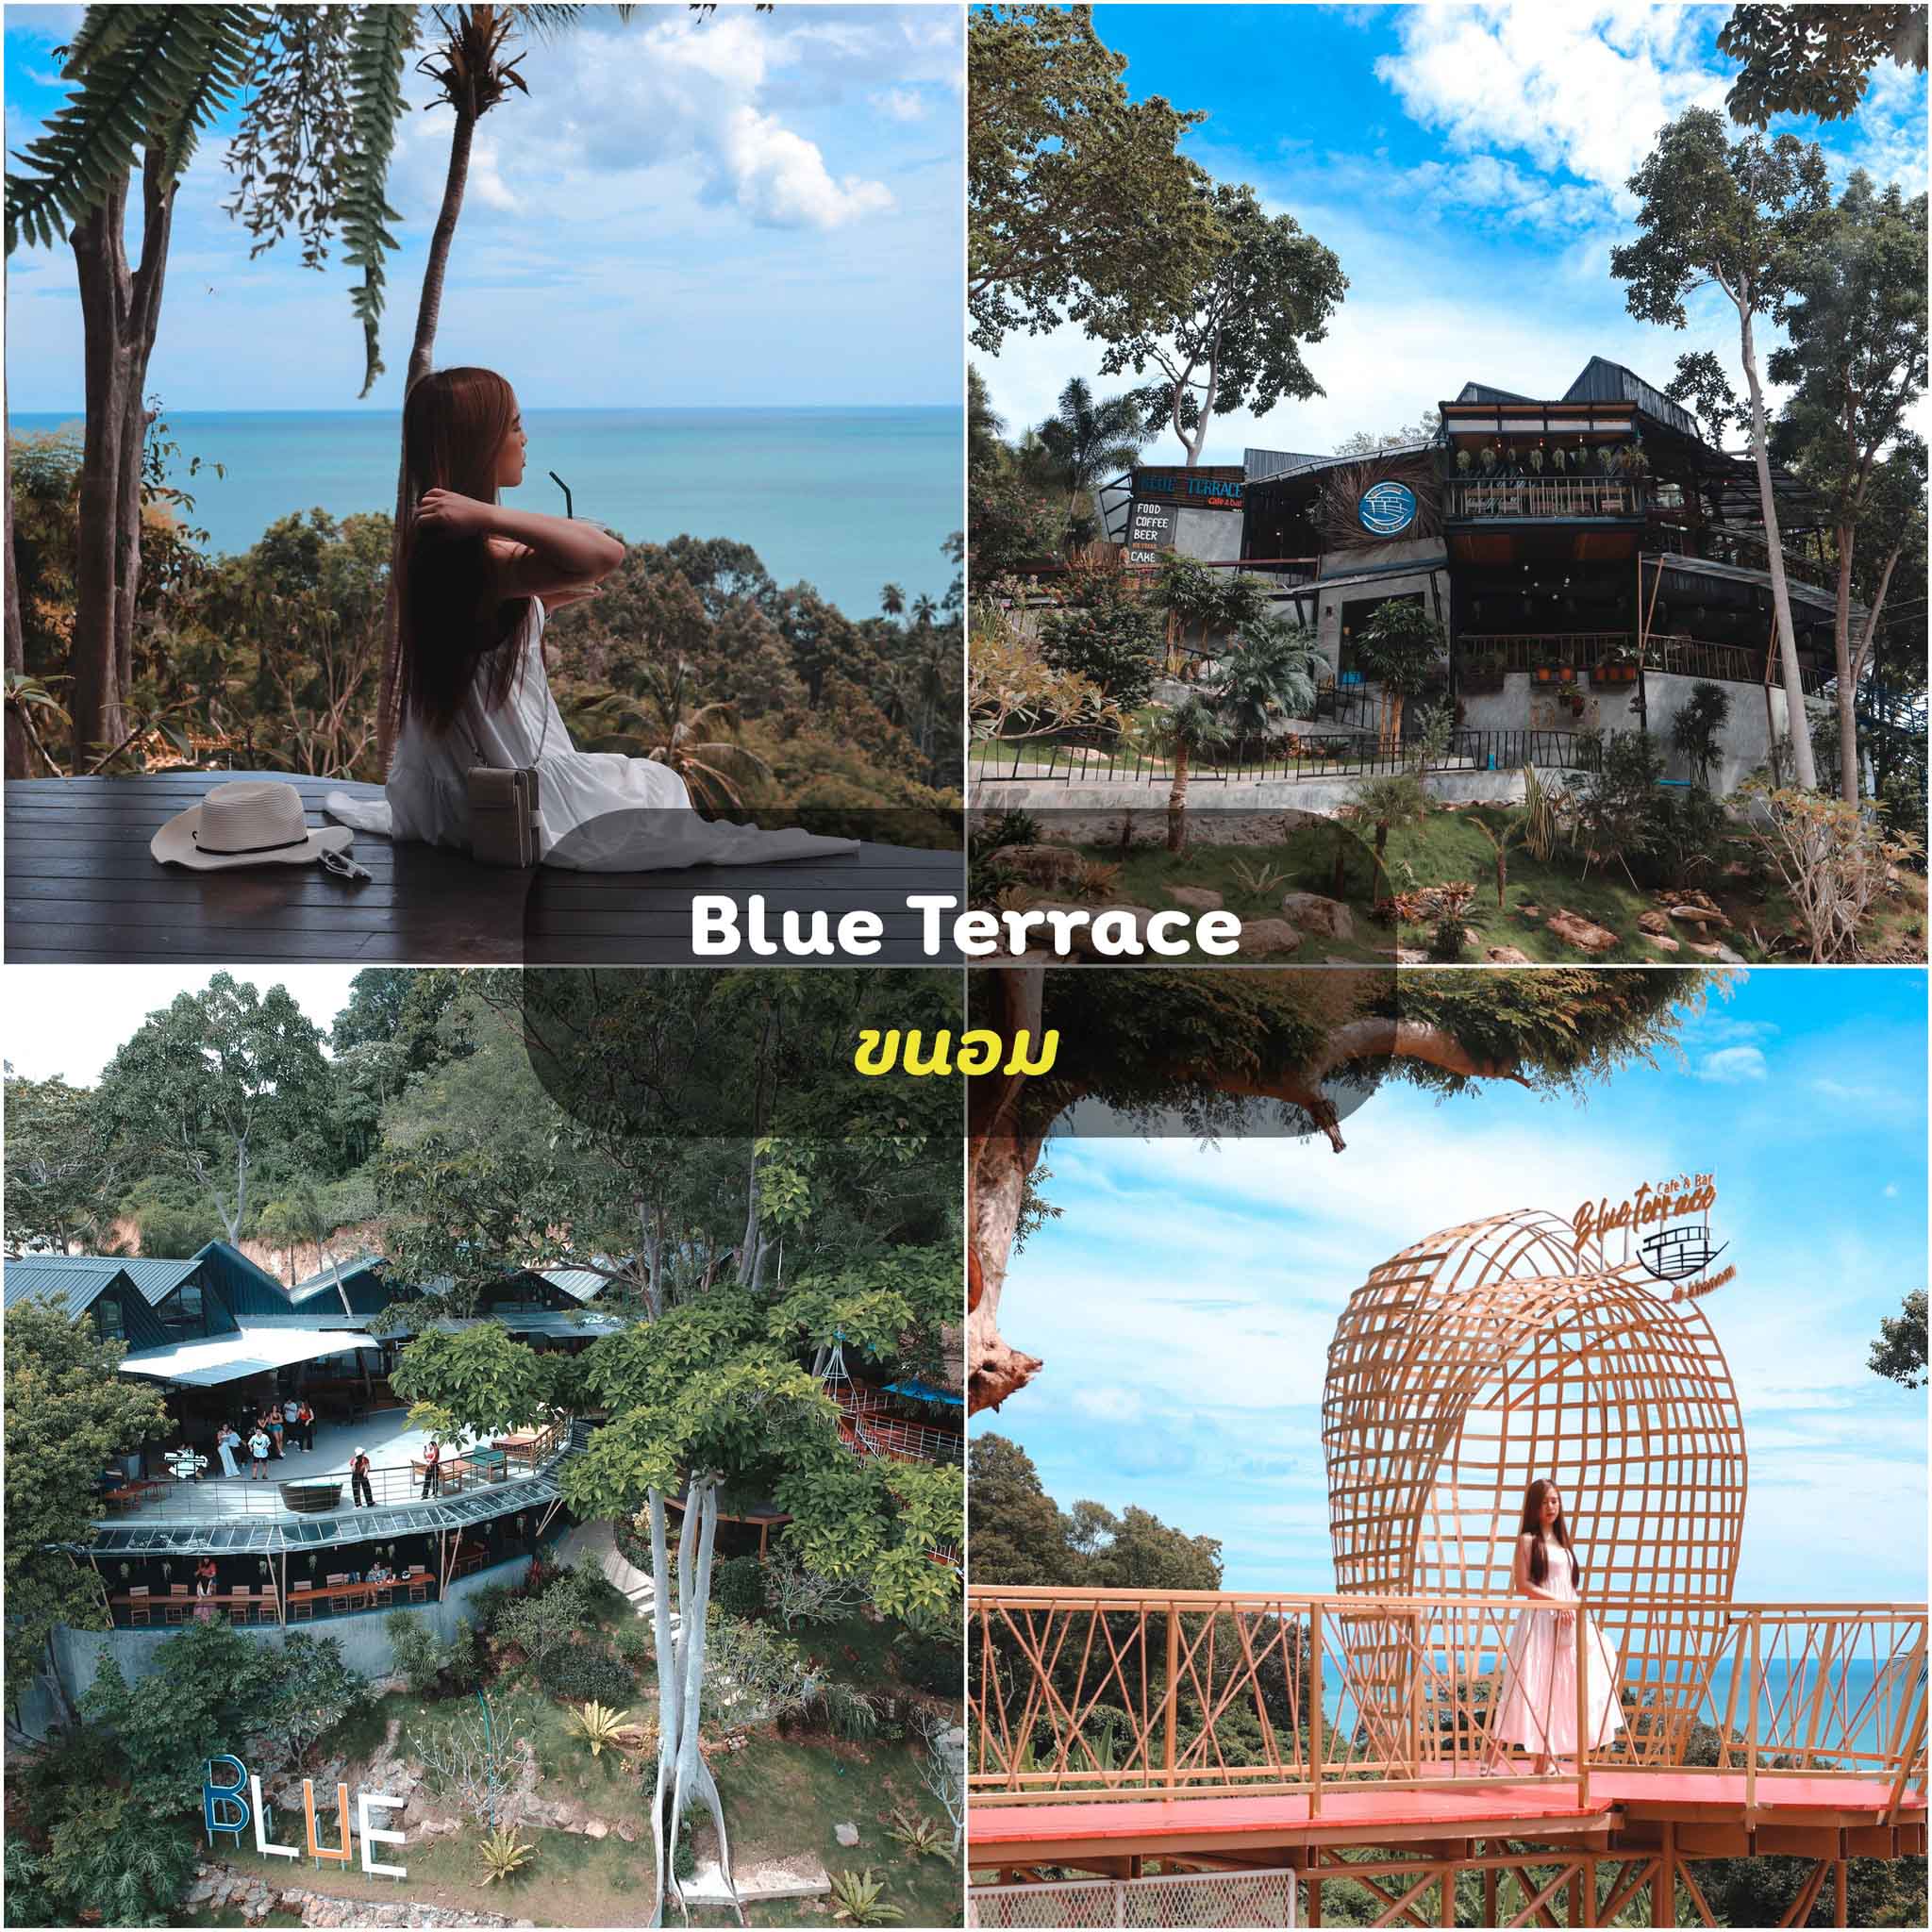 Blue-Terrace-ขนอม -จุดเช็คอินวิวหลักล้านวิวทะเล-บนภูเขาสวยๆ
 ที่เที่ยวธรรมชาตินครศรีธรรมราช,นครศรี,จุดเช็คอิน,ที่พัก